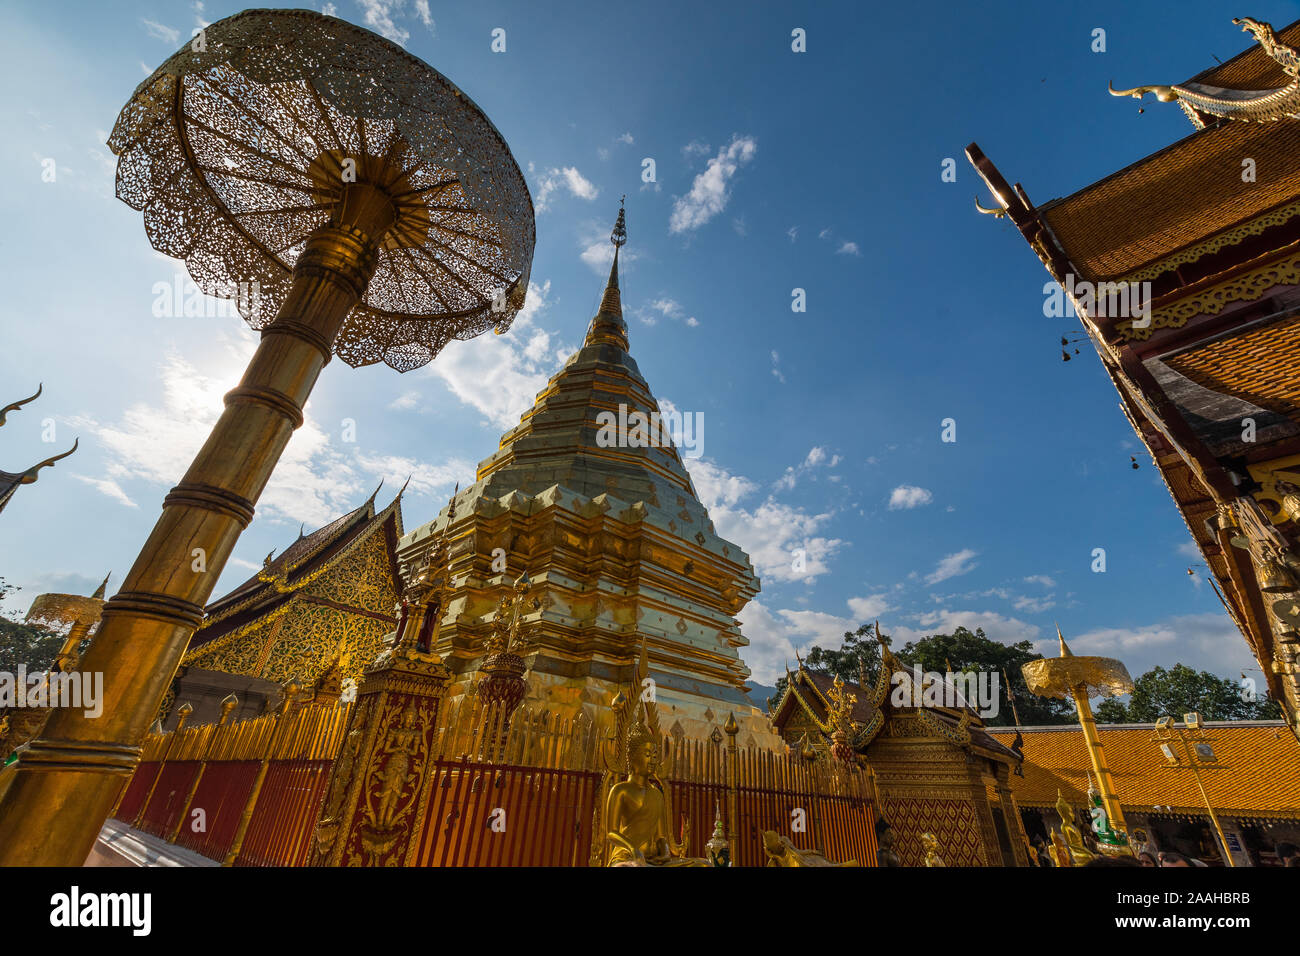 Le temple Doi Suthep au cours de journée ensoleillée à Chiang Mai, Thaïlande Banque D'Images